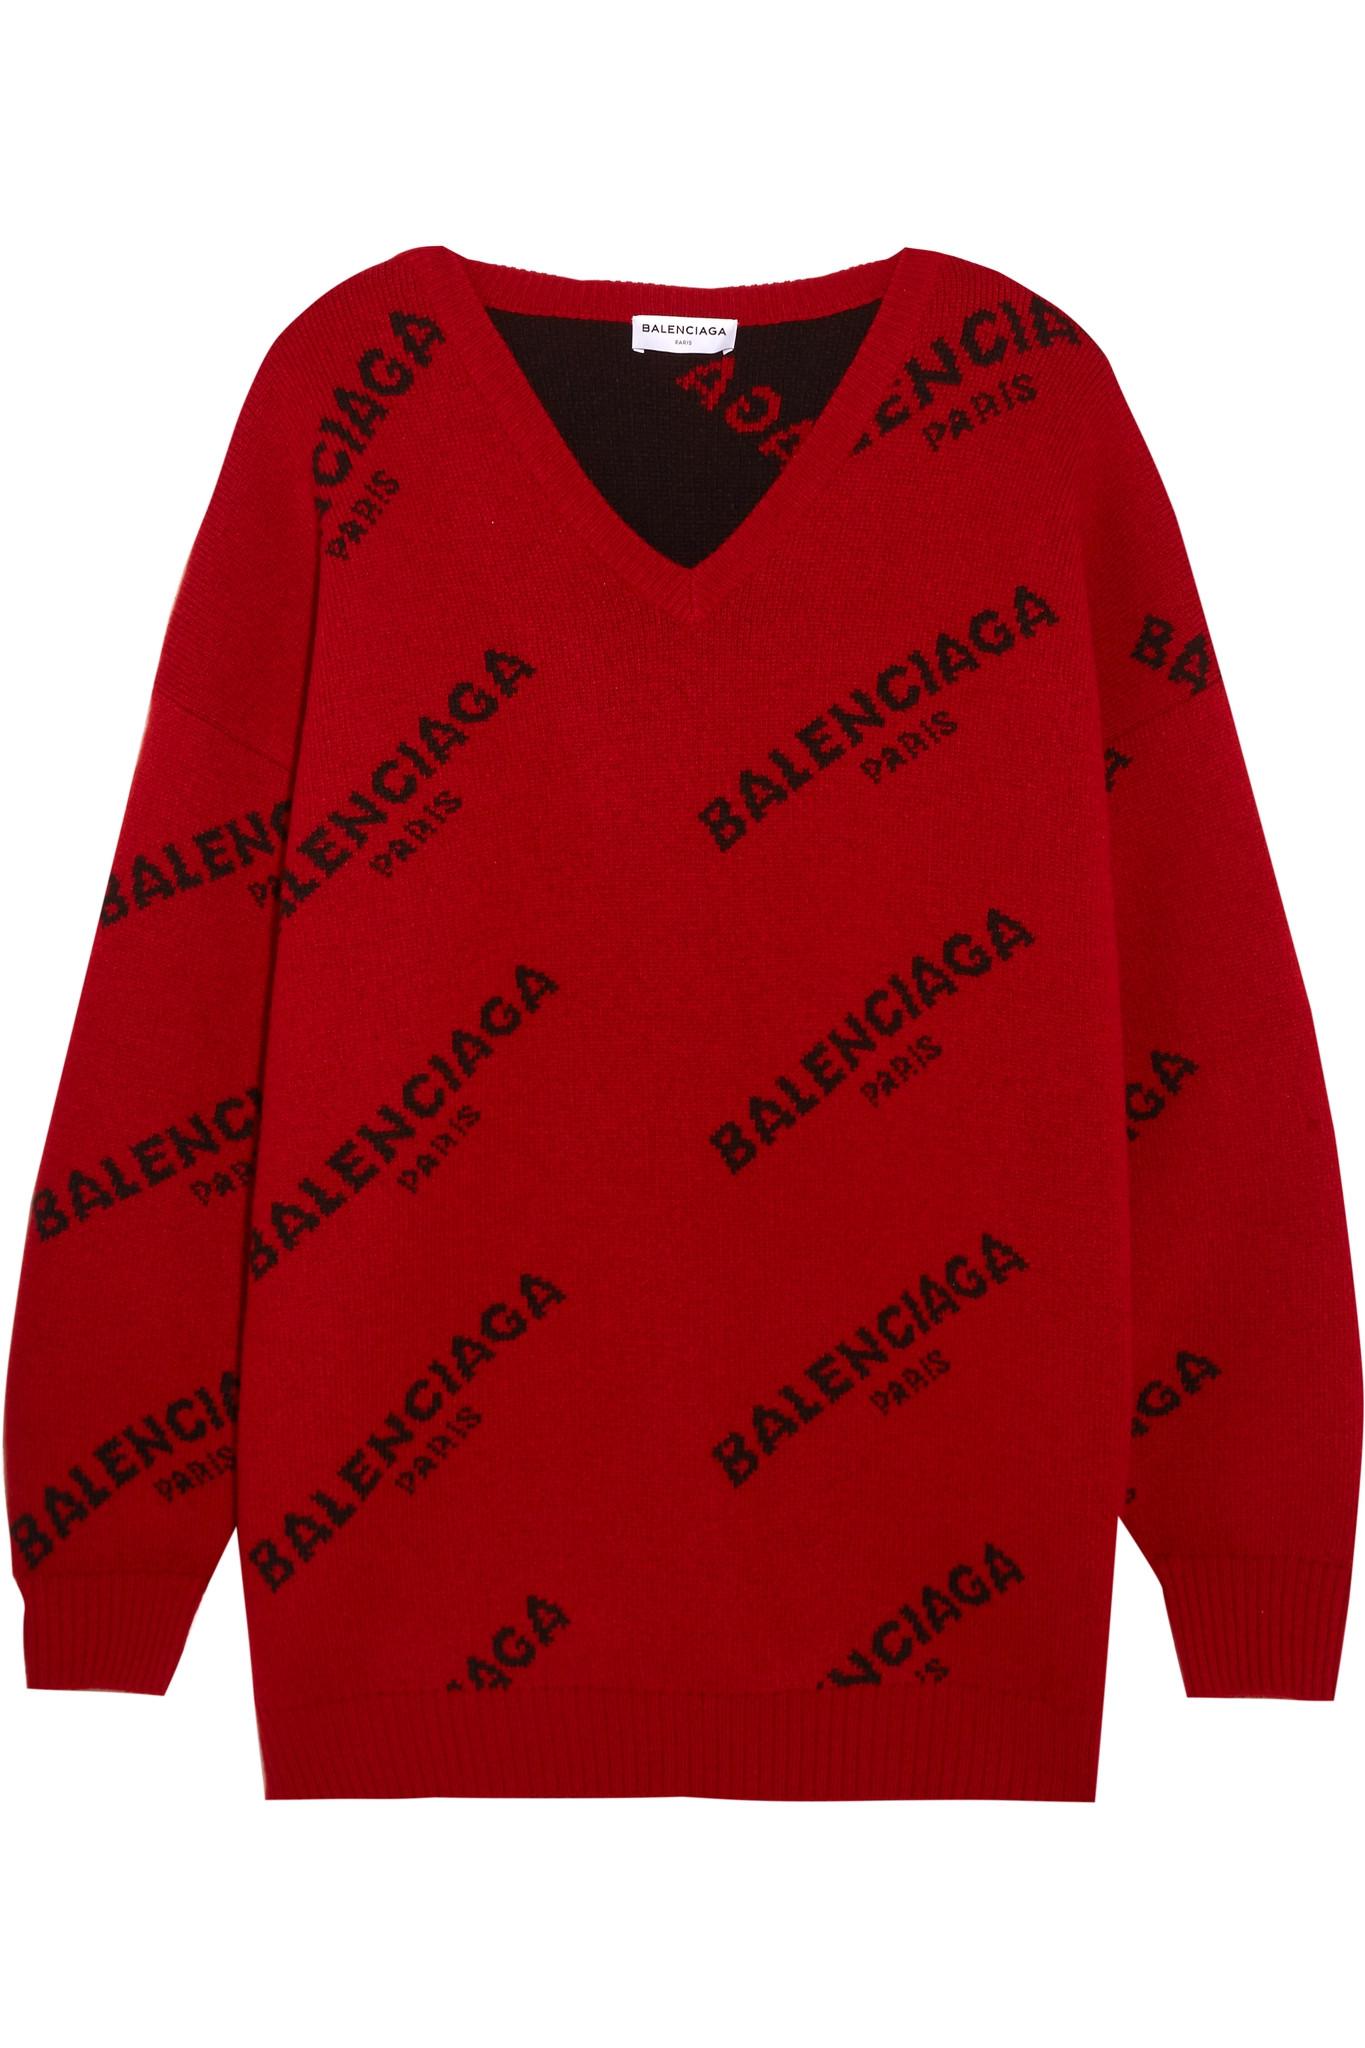 balenciaga logo sweater red